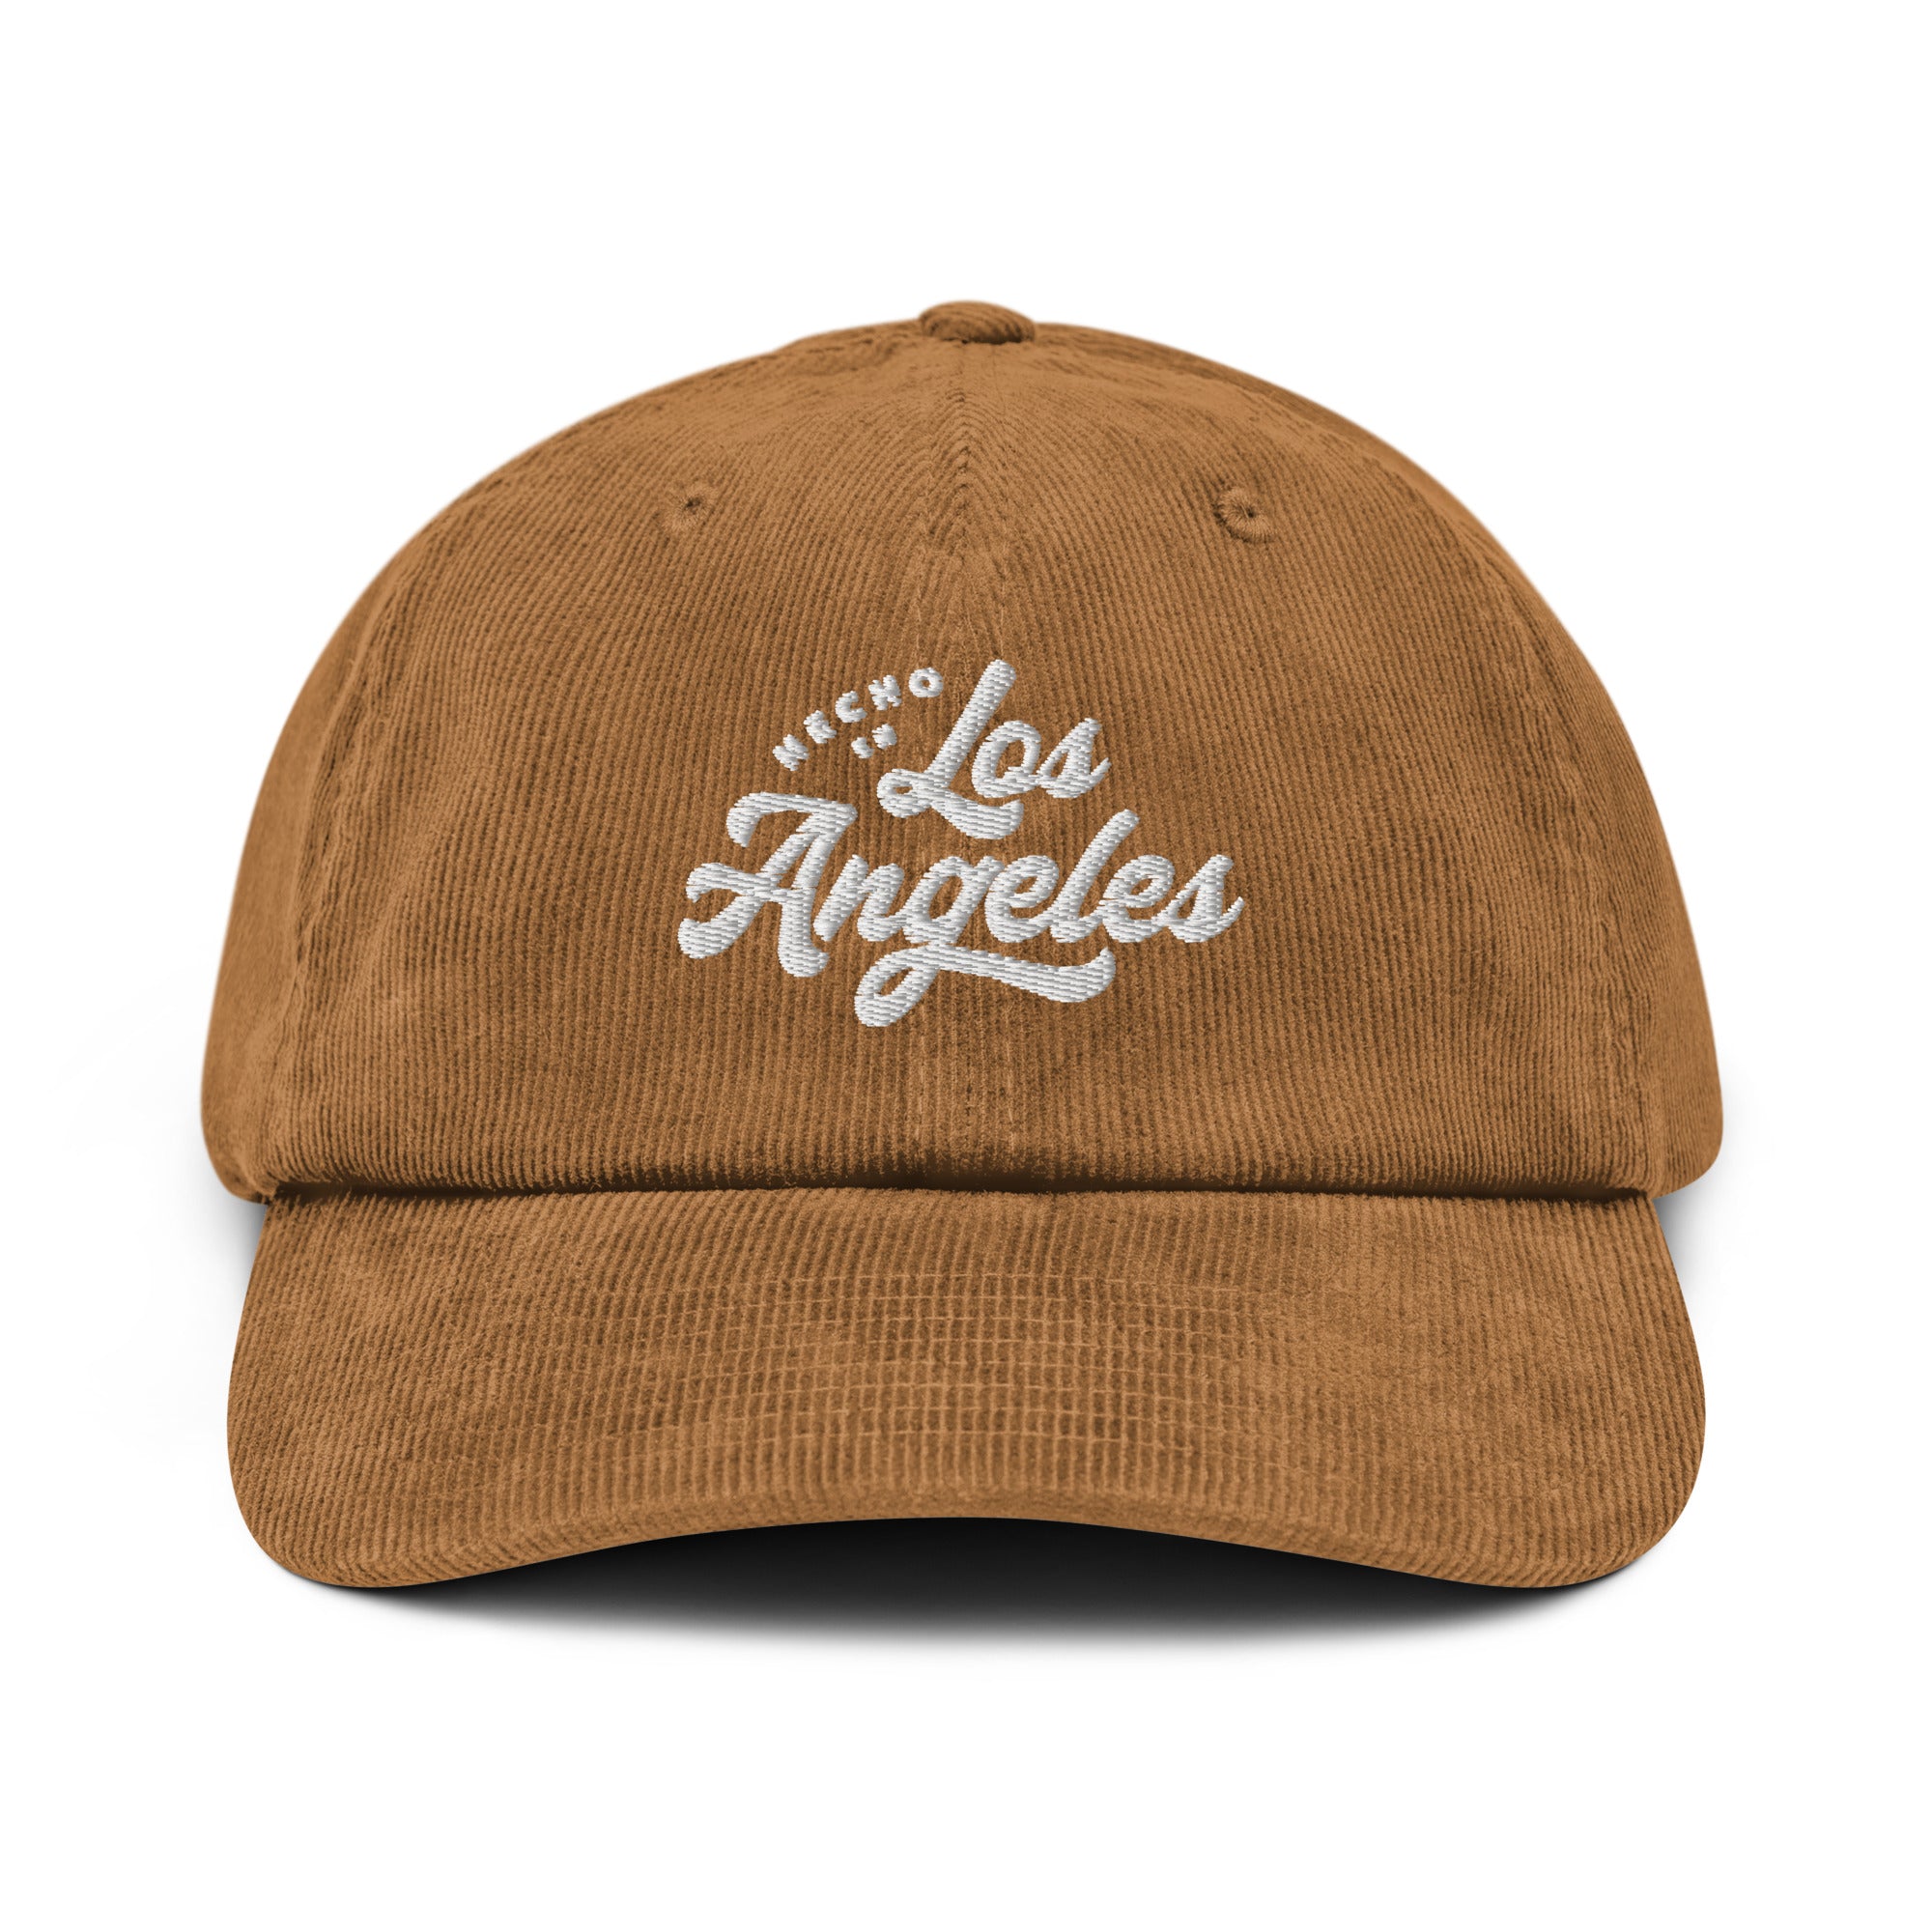 Hecho En Los Angeles Corduroy hat